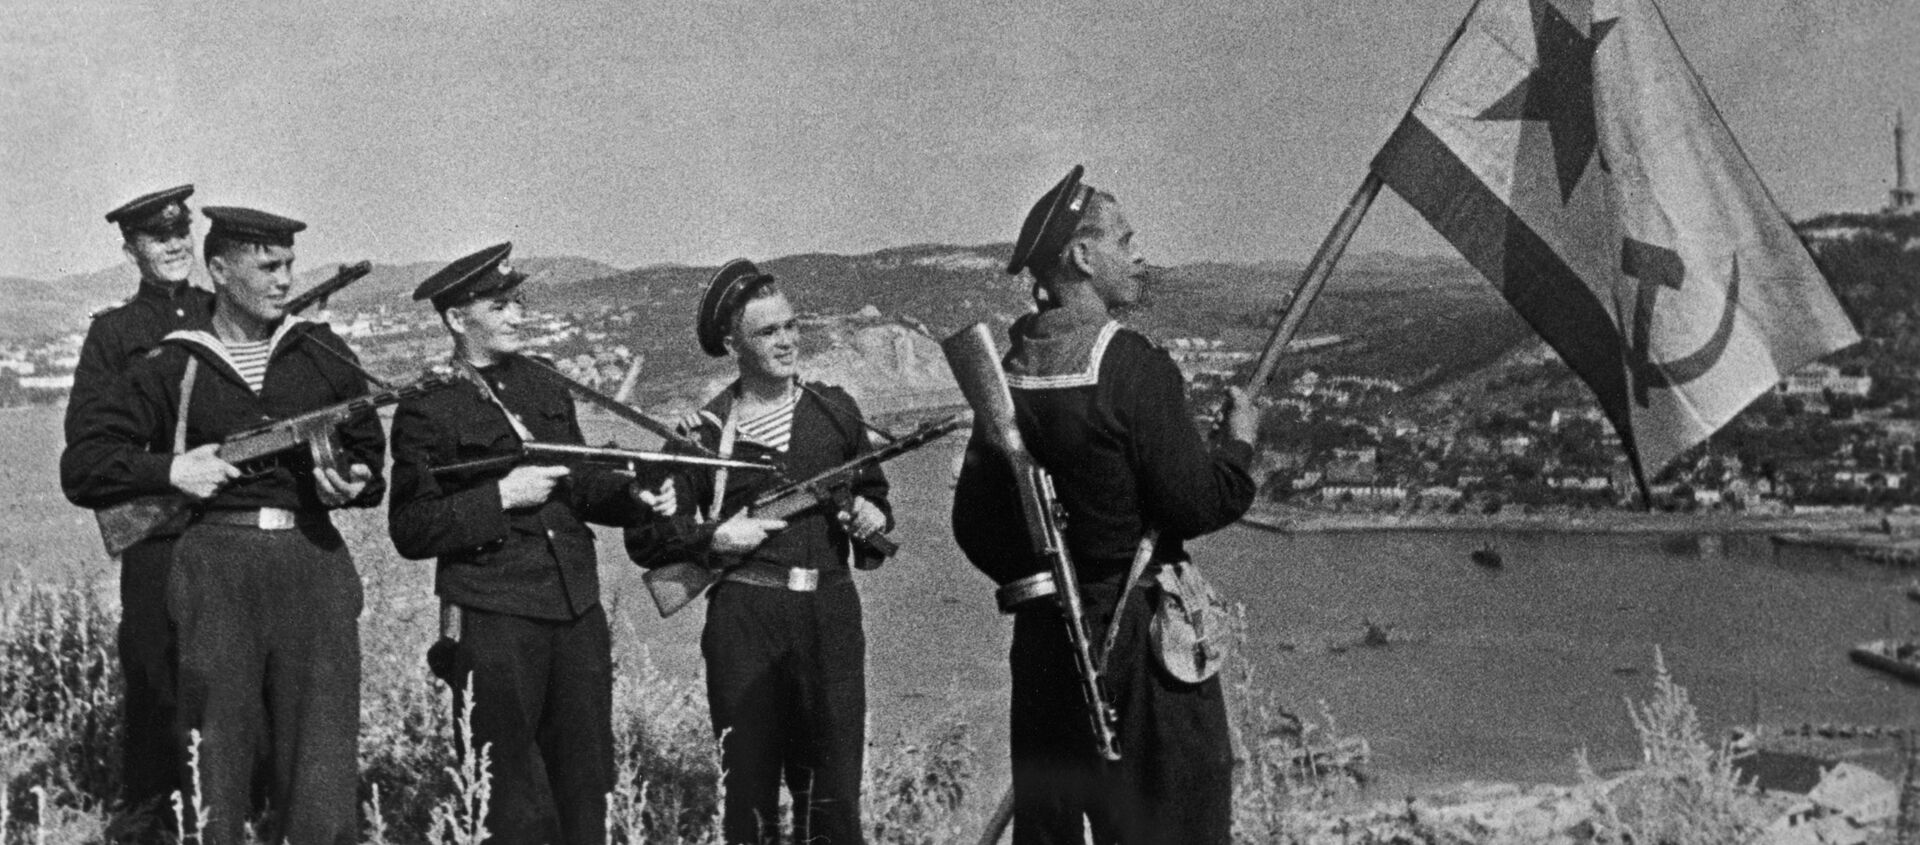 Los marines soviéticos en Port Arthur, China (archivo) - Sputnik Mundo, 1920, 08.08.2020